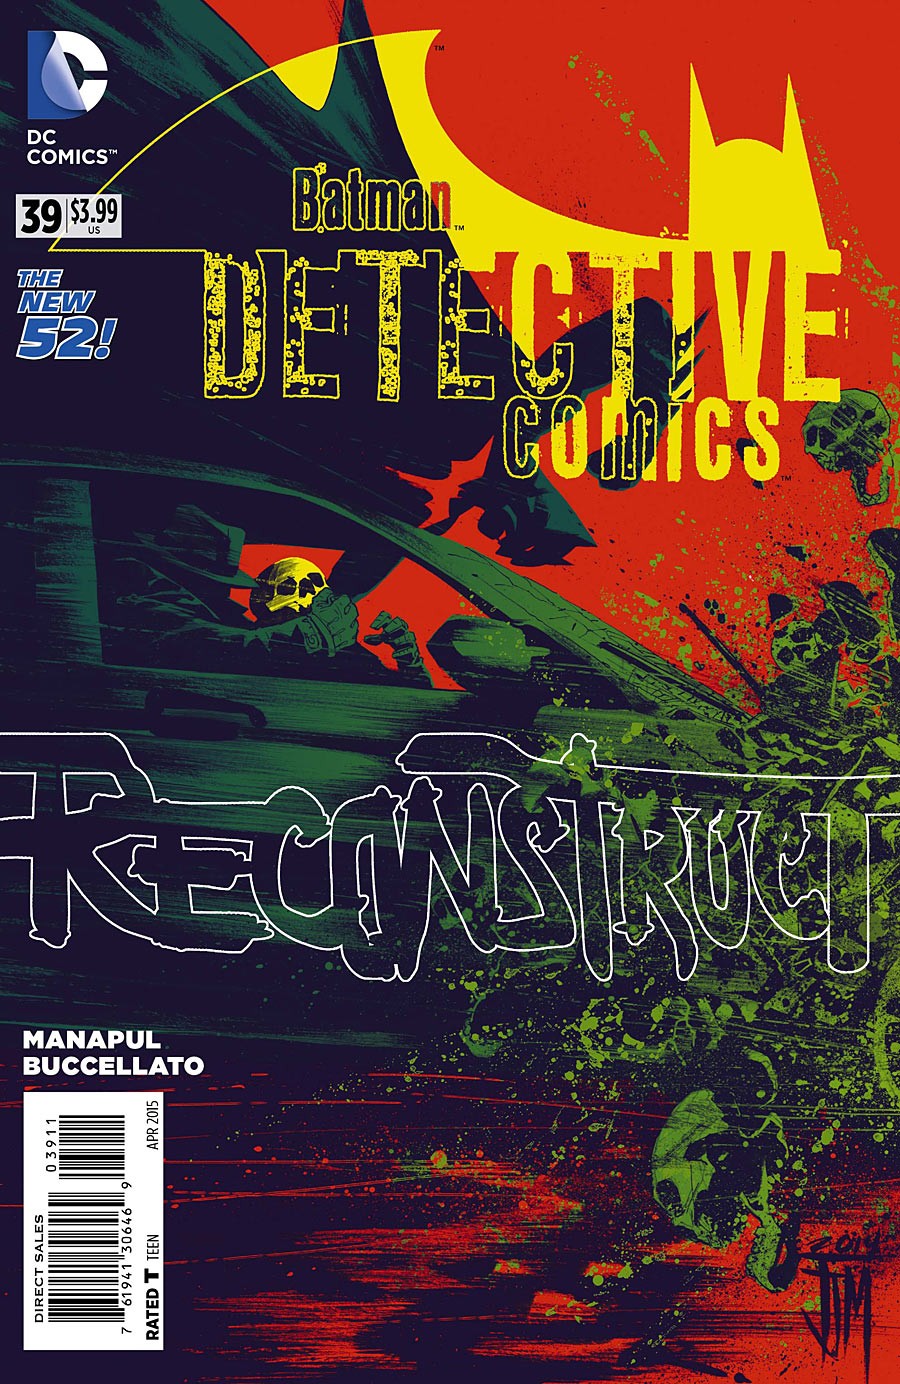 Detective Comics Vol. 2 #39